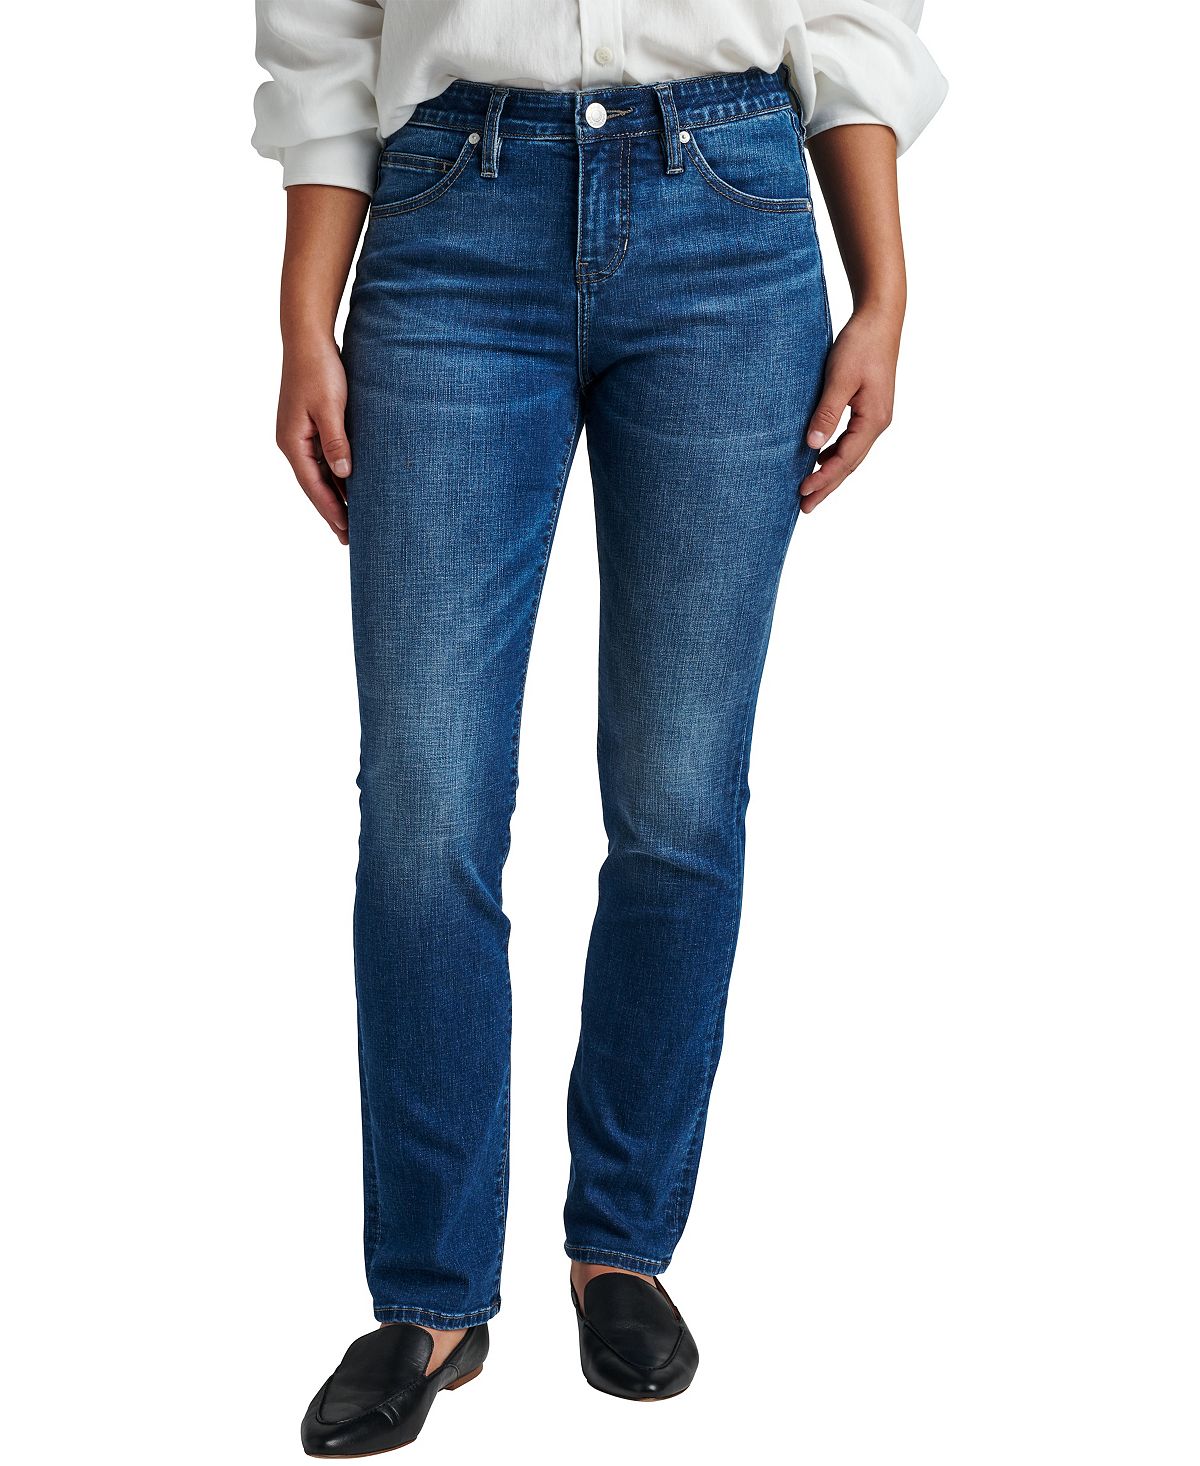 Женские прямые джинсы Ruby Comfort стрейч со средней посадкой JAG